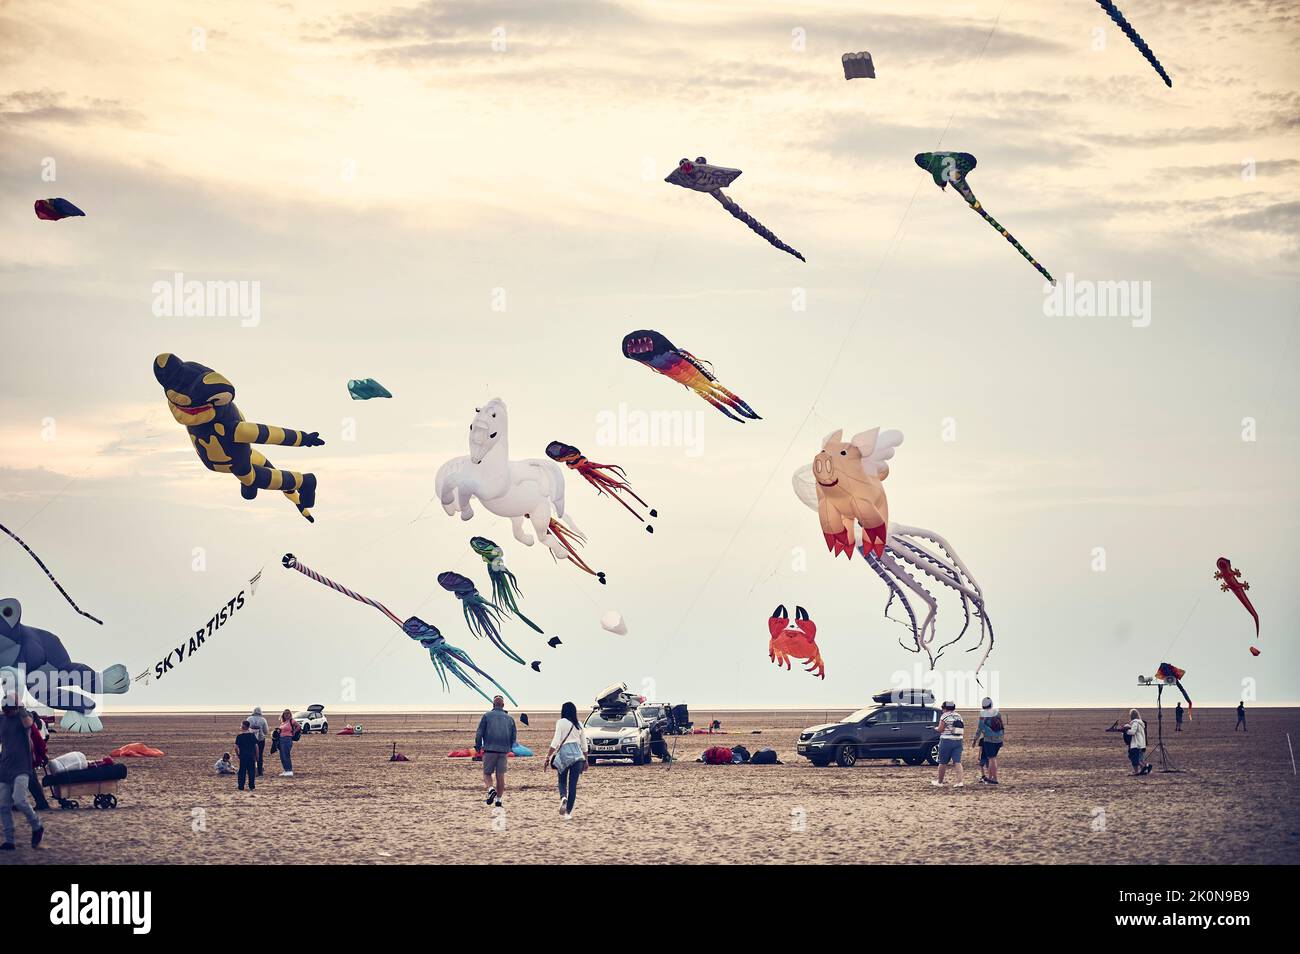 St Annes International kite festival held on the beach in September Stock Photo